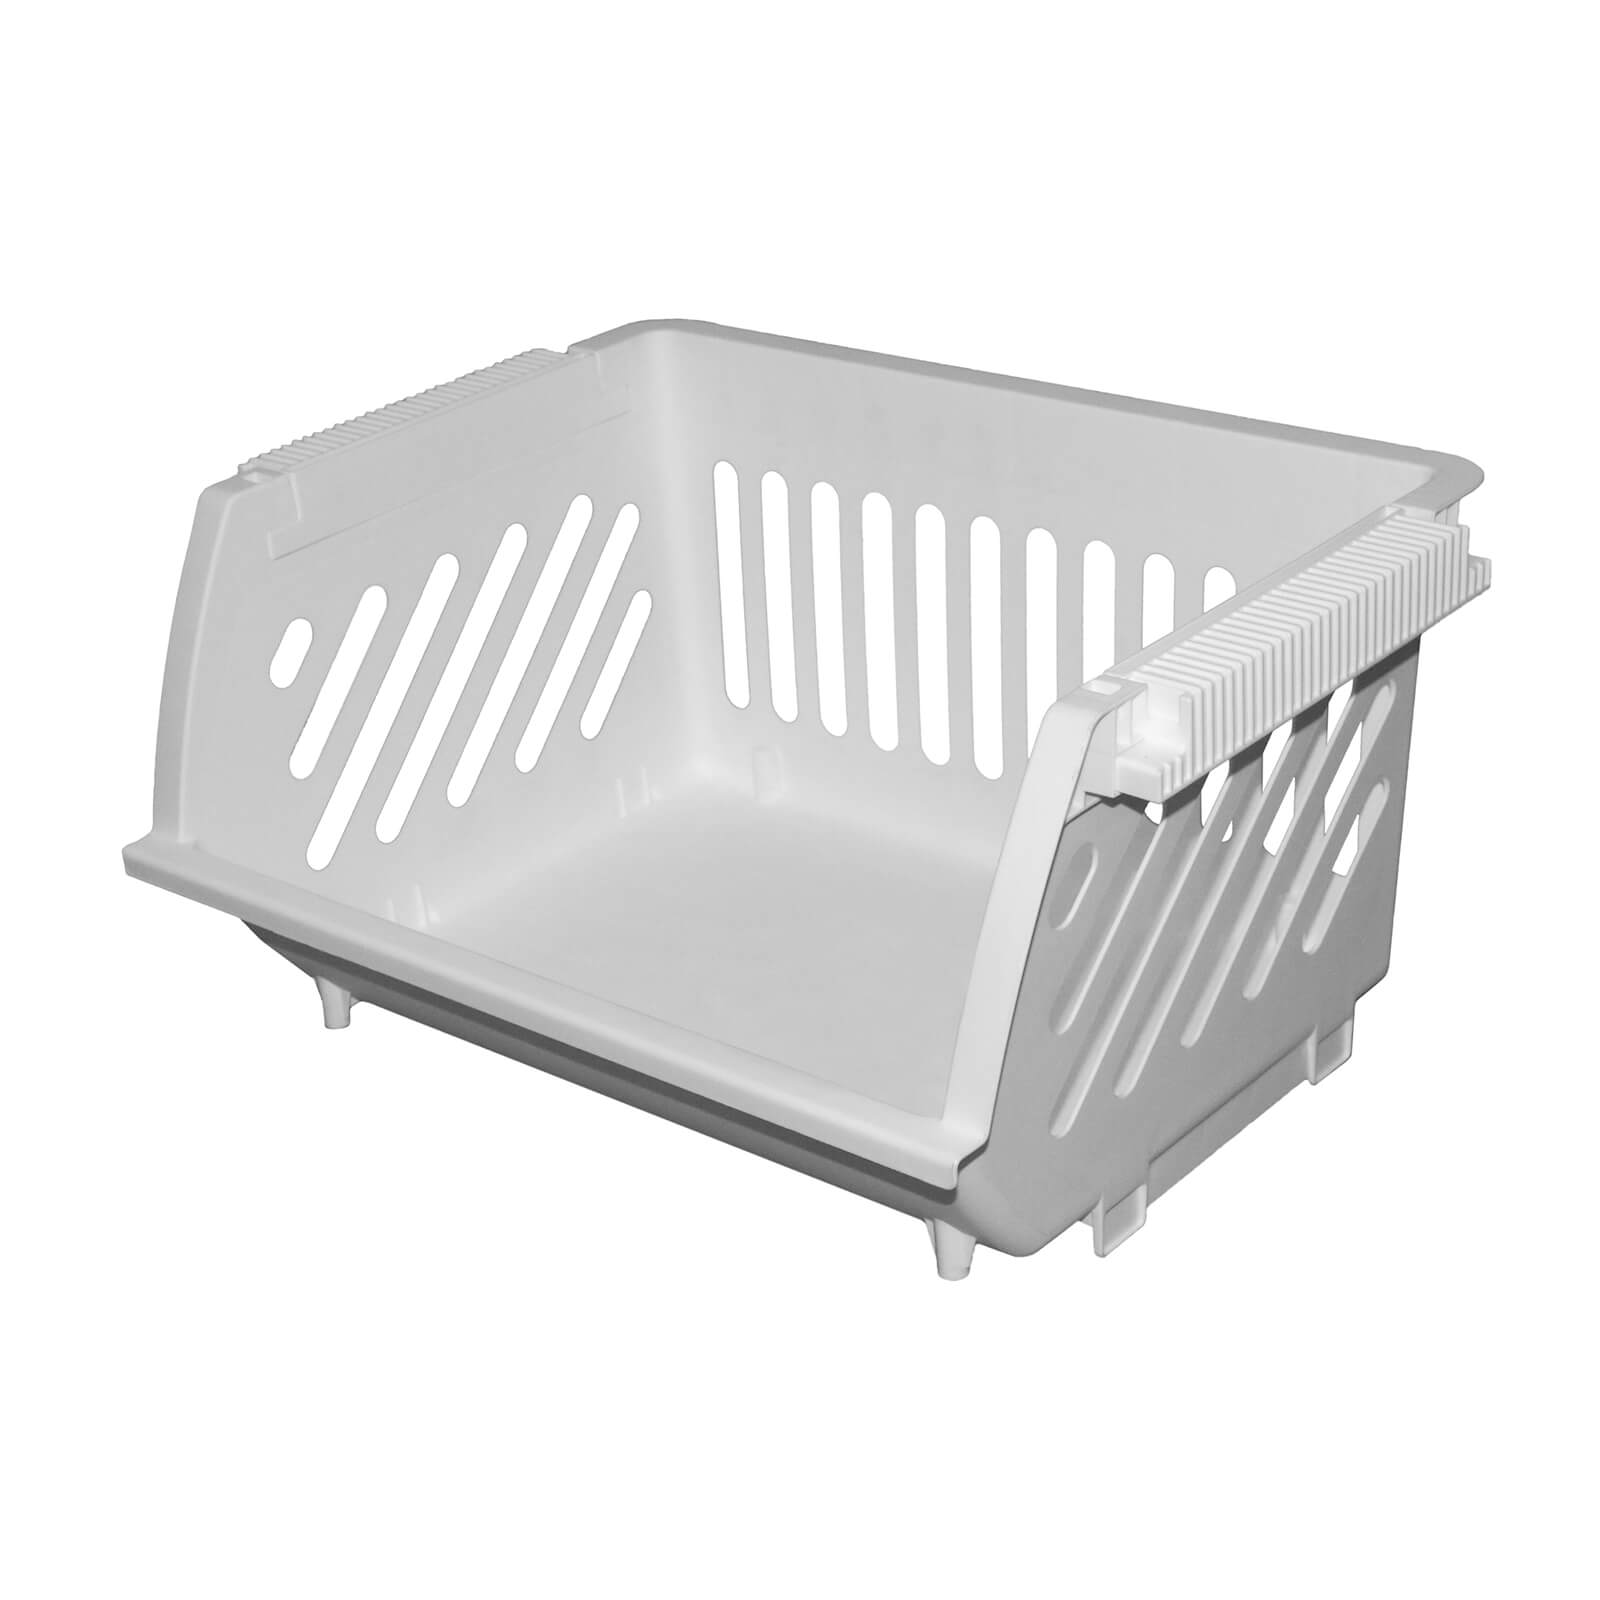 Multi Functional Stacking Basket - White